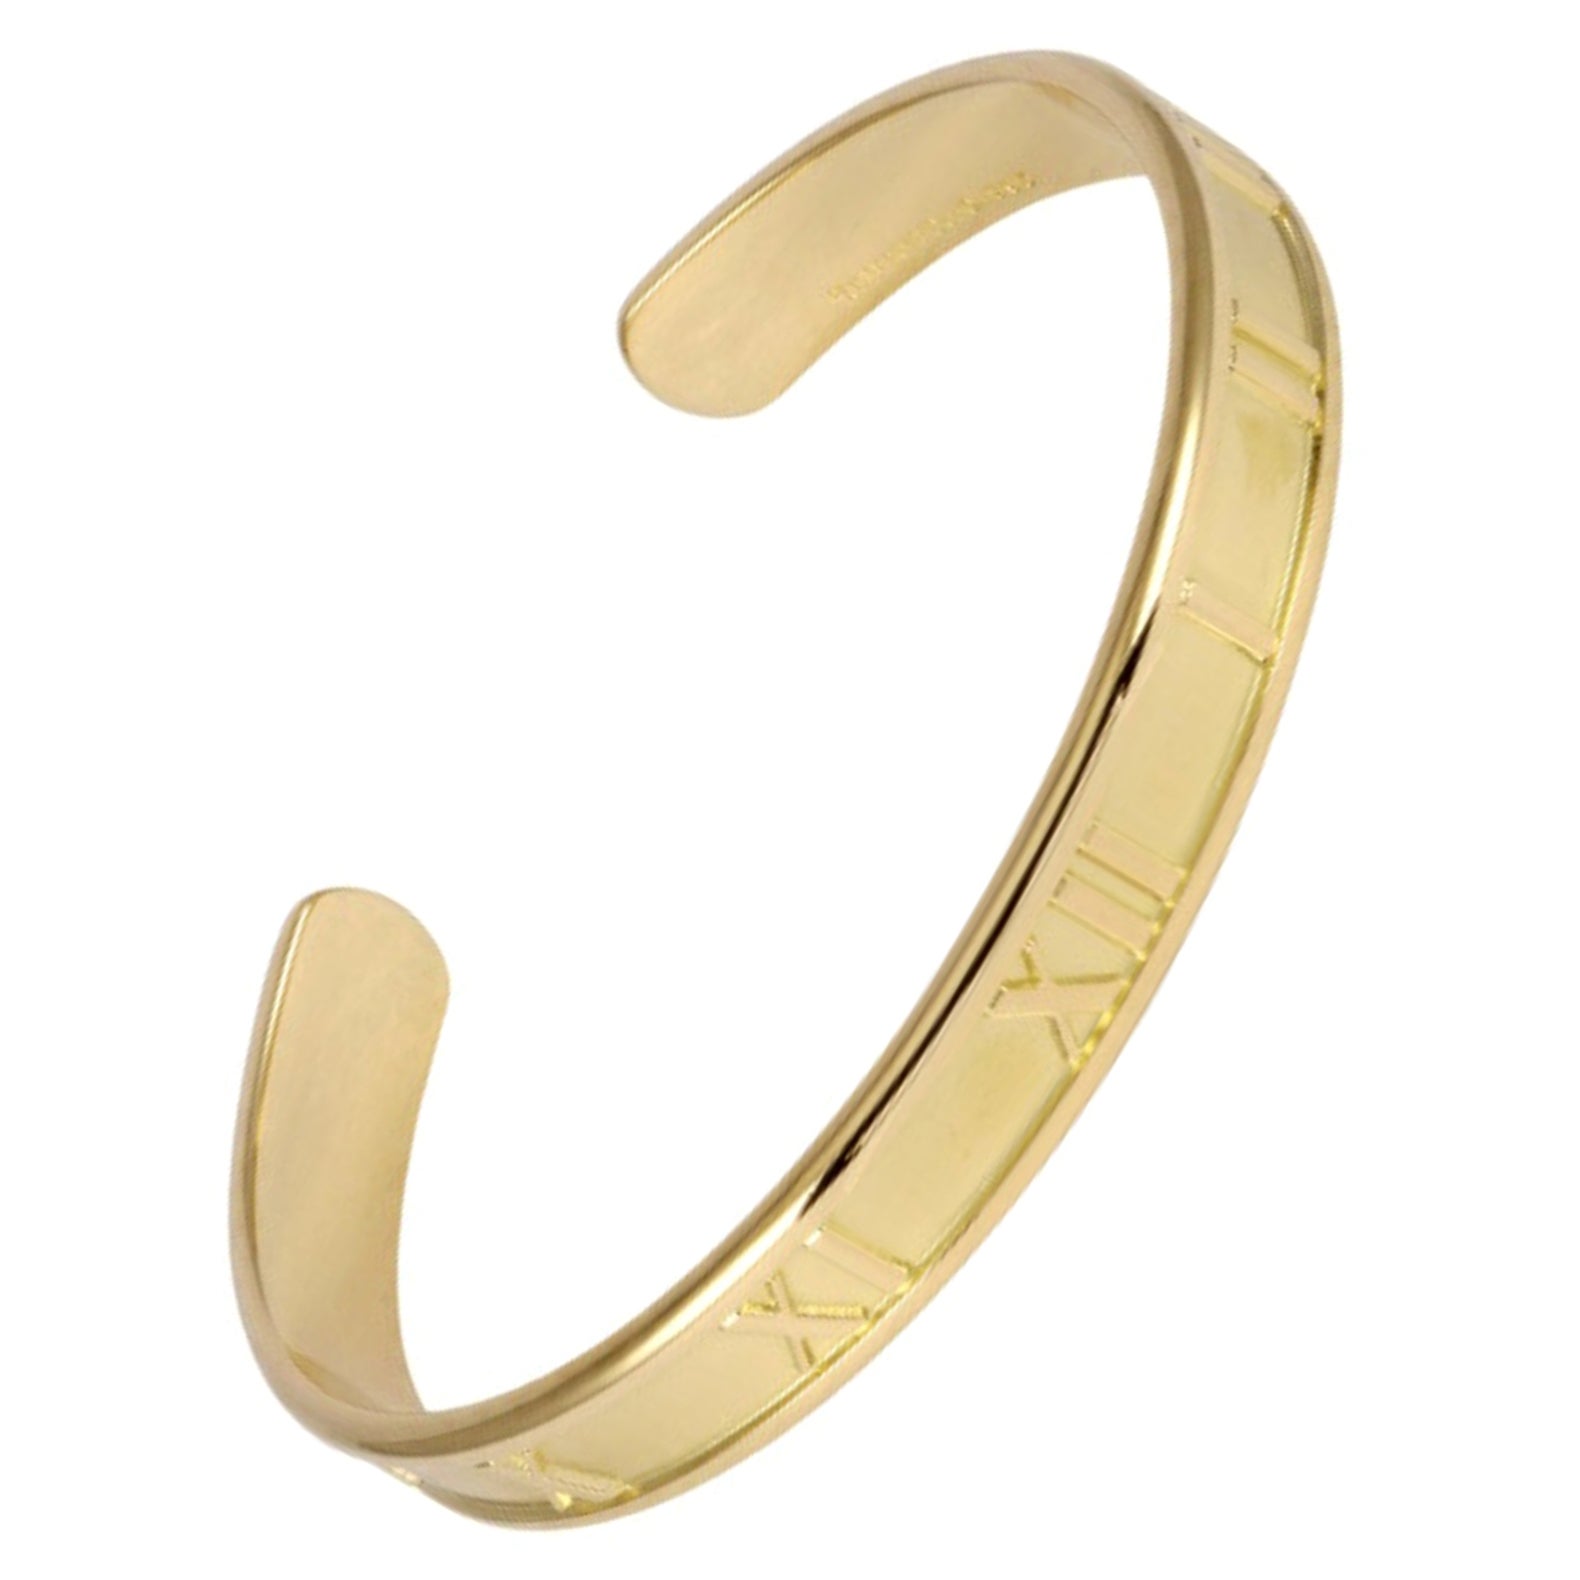 Tiffany Atlas Bracelet in 18K Yellow Gold